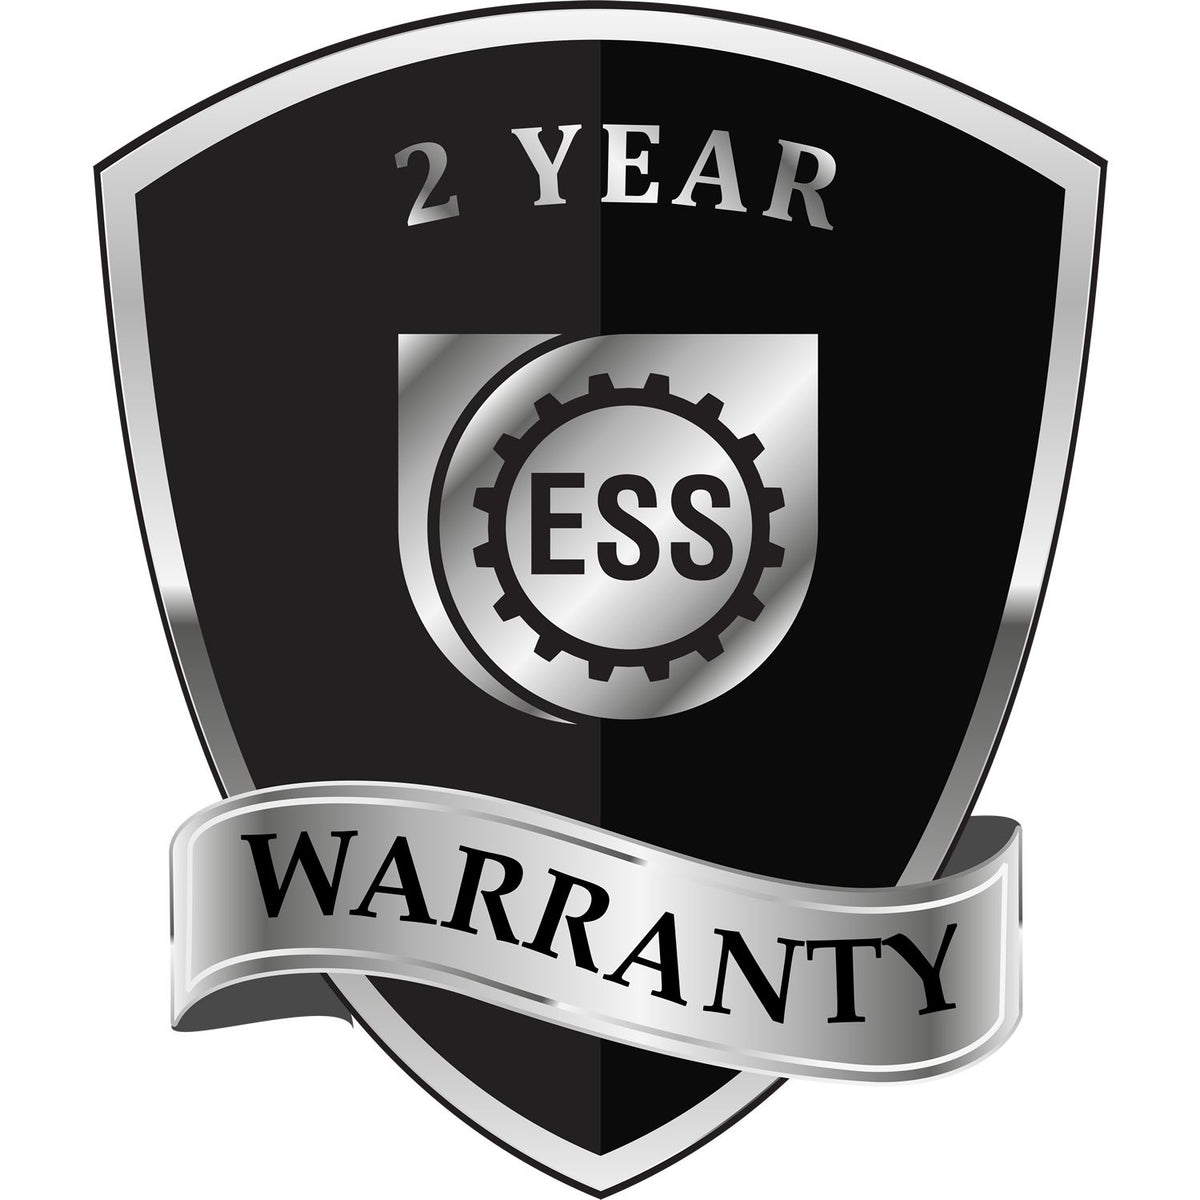 A black and silver badge or emblem showing warranty information for the Hybrid Delaware Land Surveyor Seal